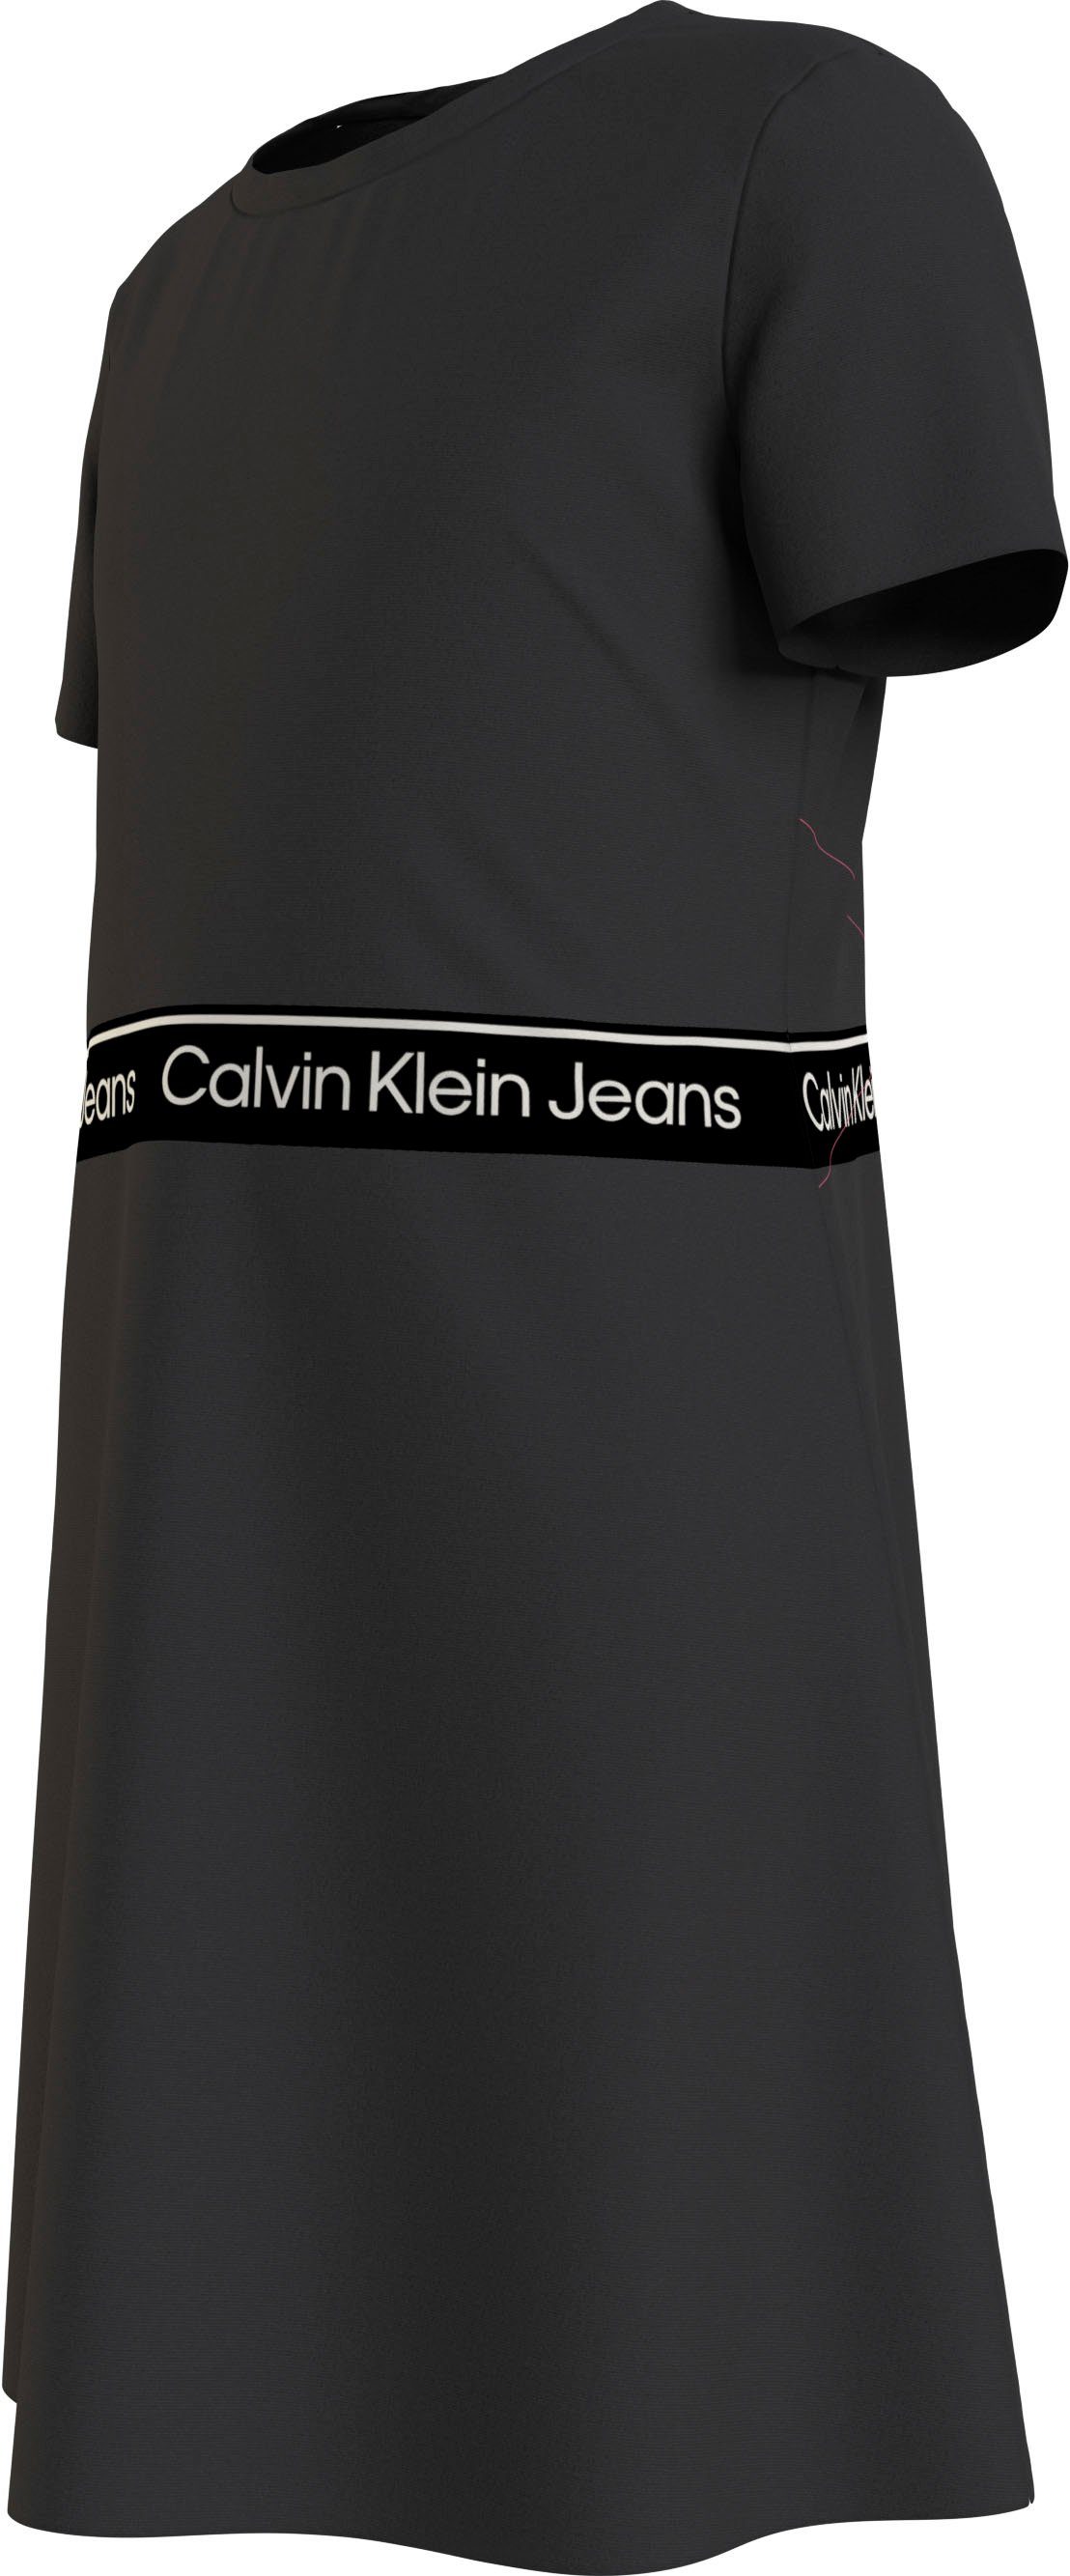 TAPE SS PUNTO Skaterkleid Klein Black LOGO Calvin DRESS Jeans Ck